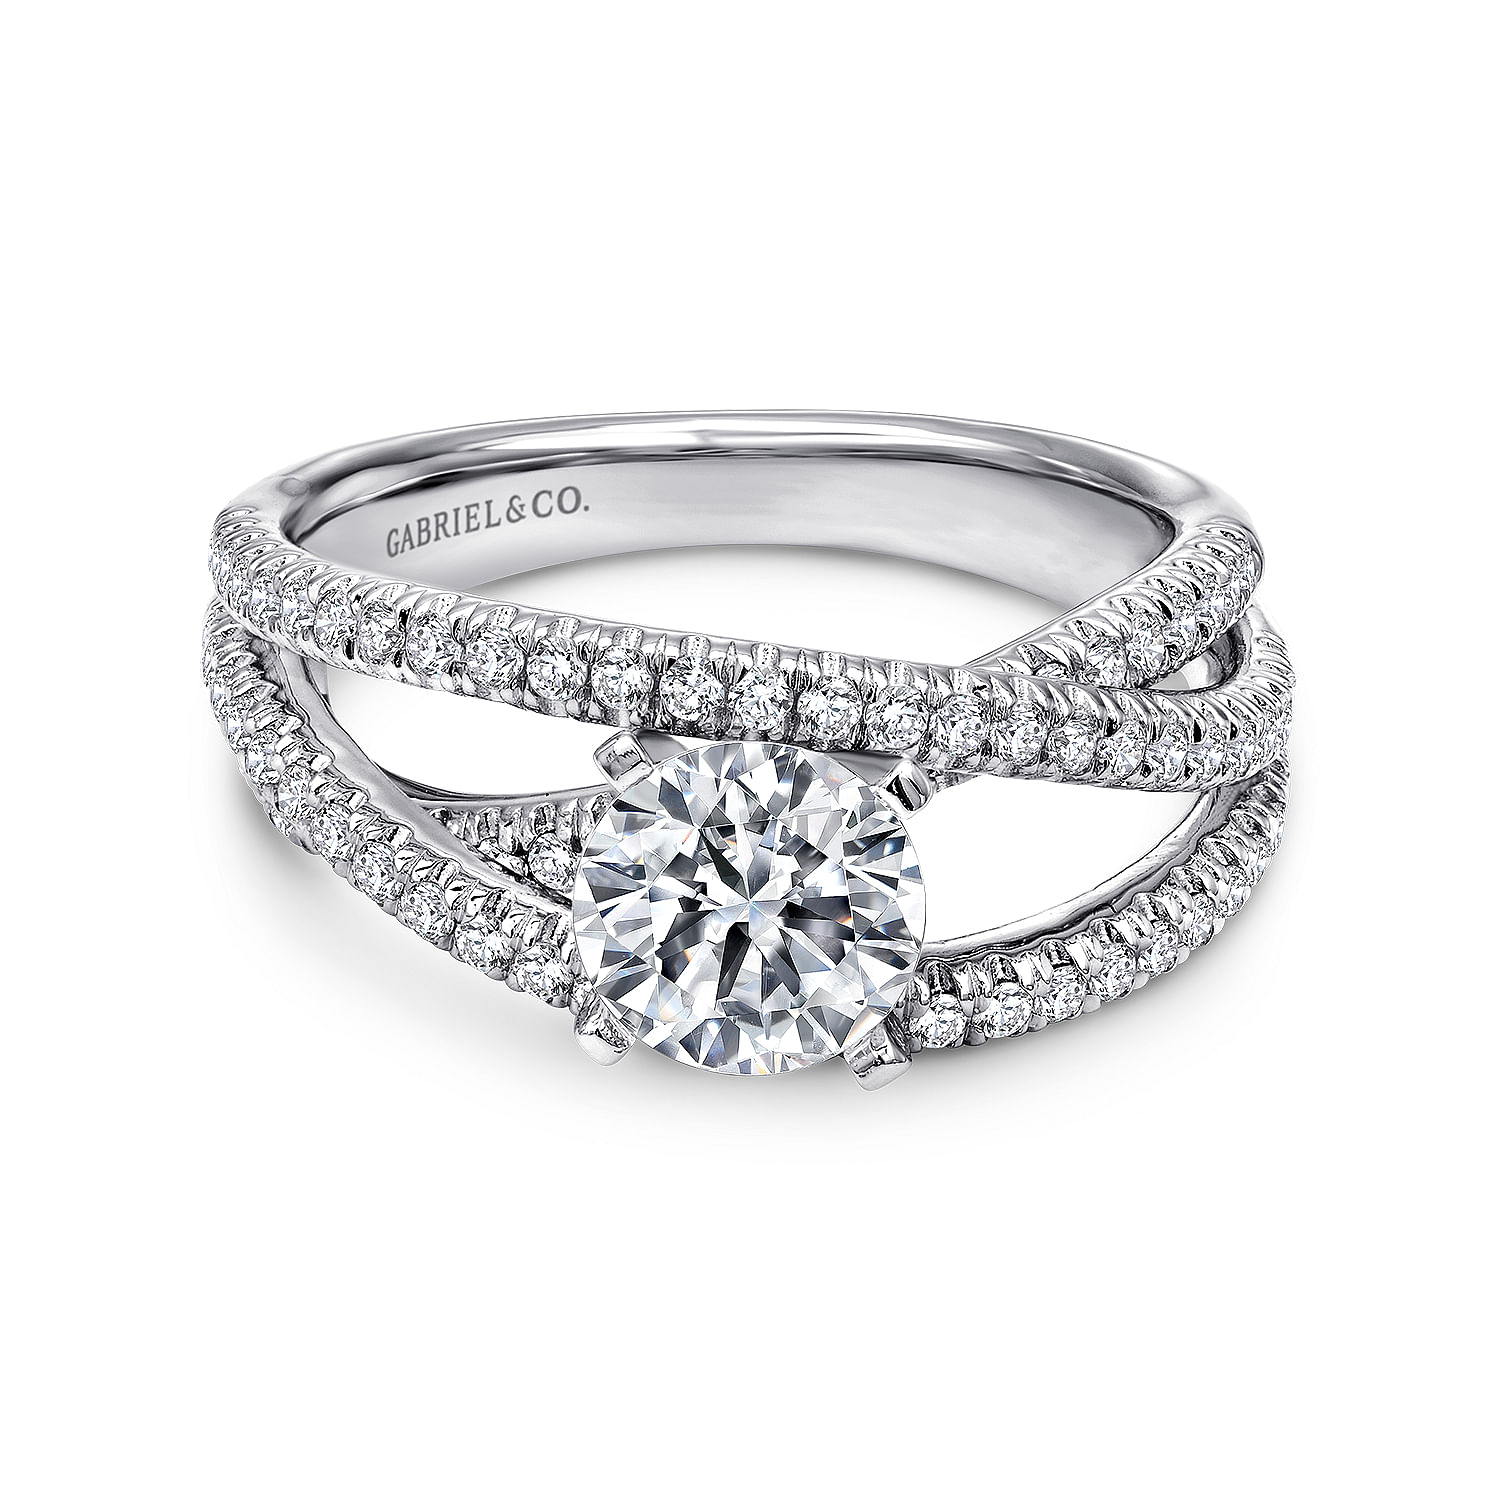 Mackenzie - Platinum Round Free Form Diamond Engagement Ring